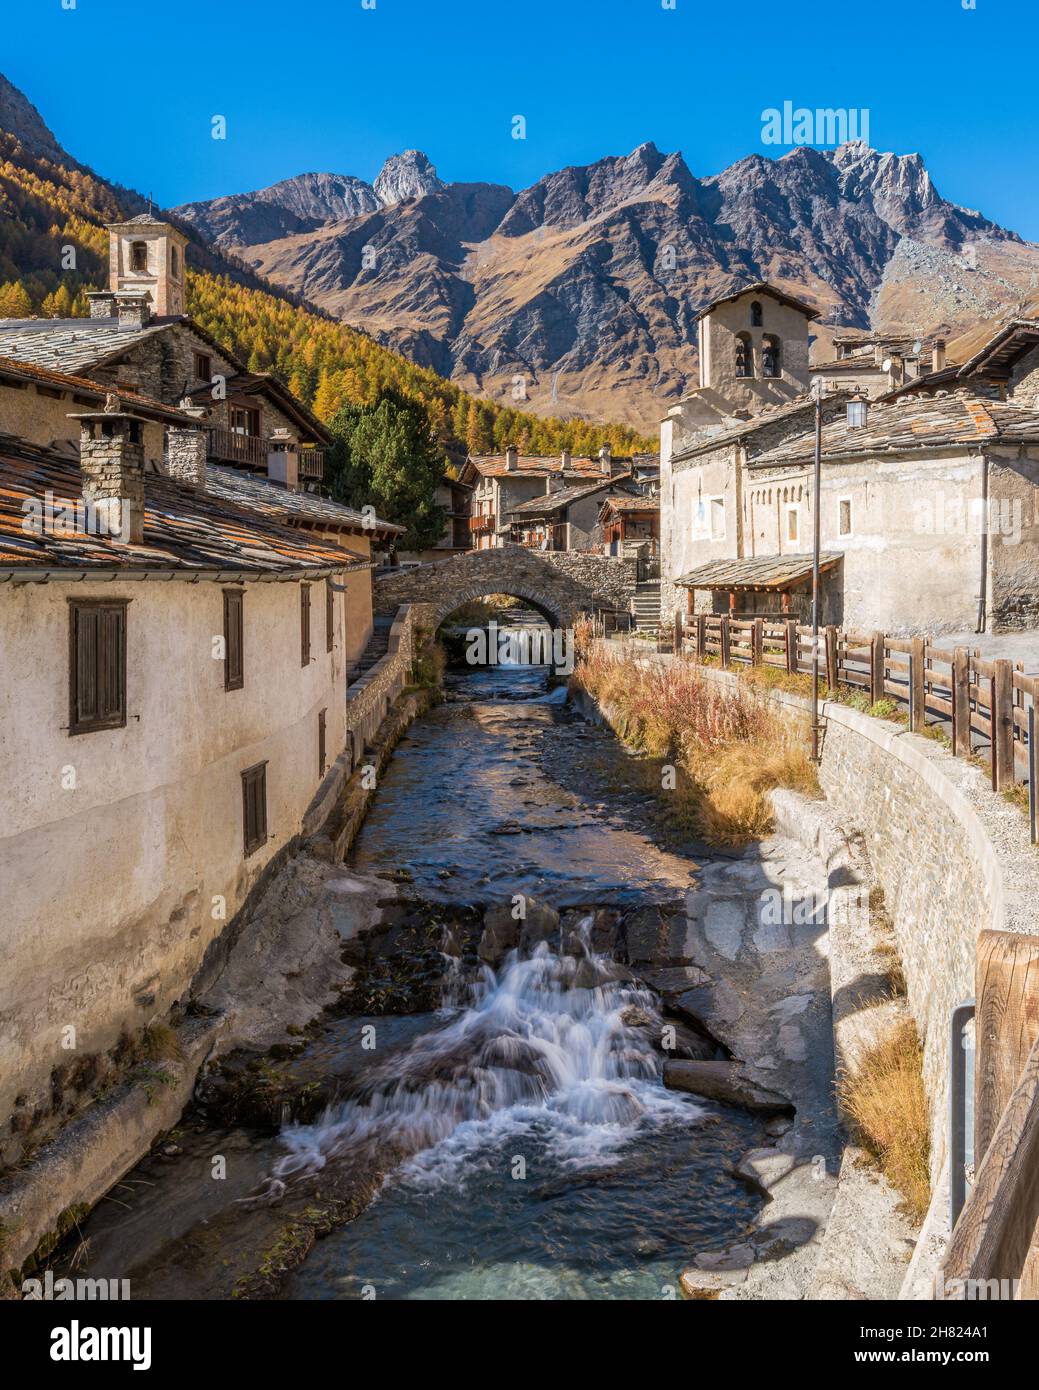 Il pittoresco borgo di Chianale durante la stagione autunnale, in Valle Varaita, Piemonte, nel nord Italia. Foto Stock